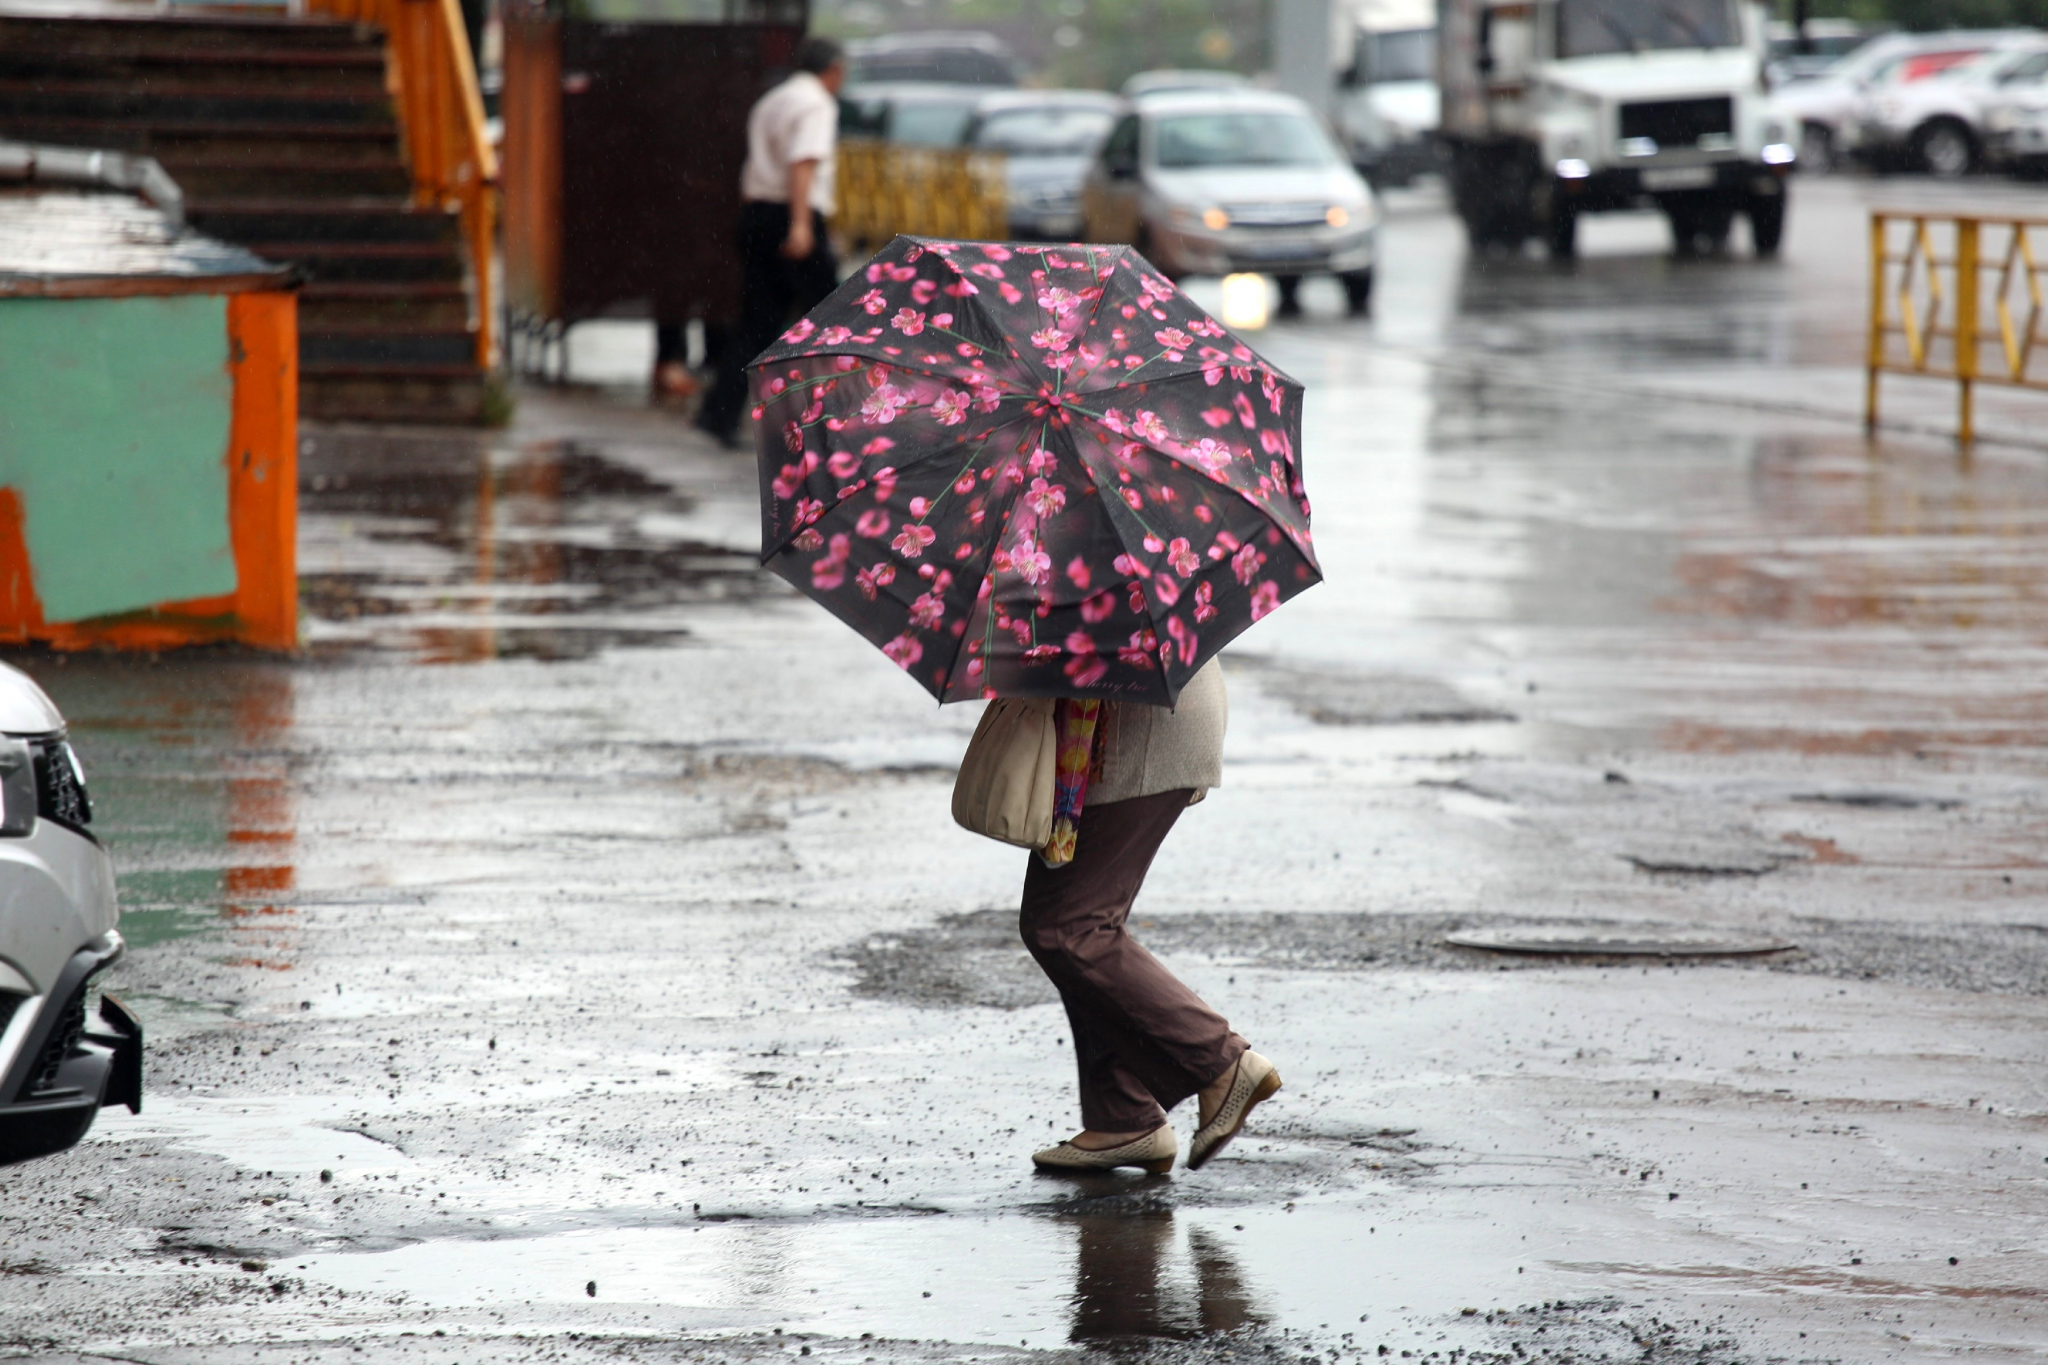 МЧС Мордовии предупреждает о неблагоприятных погодных условиях